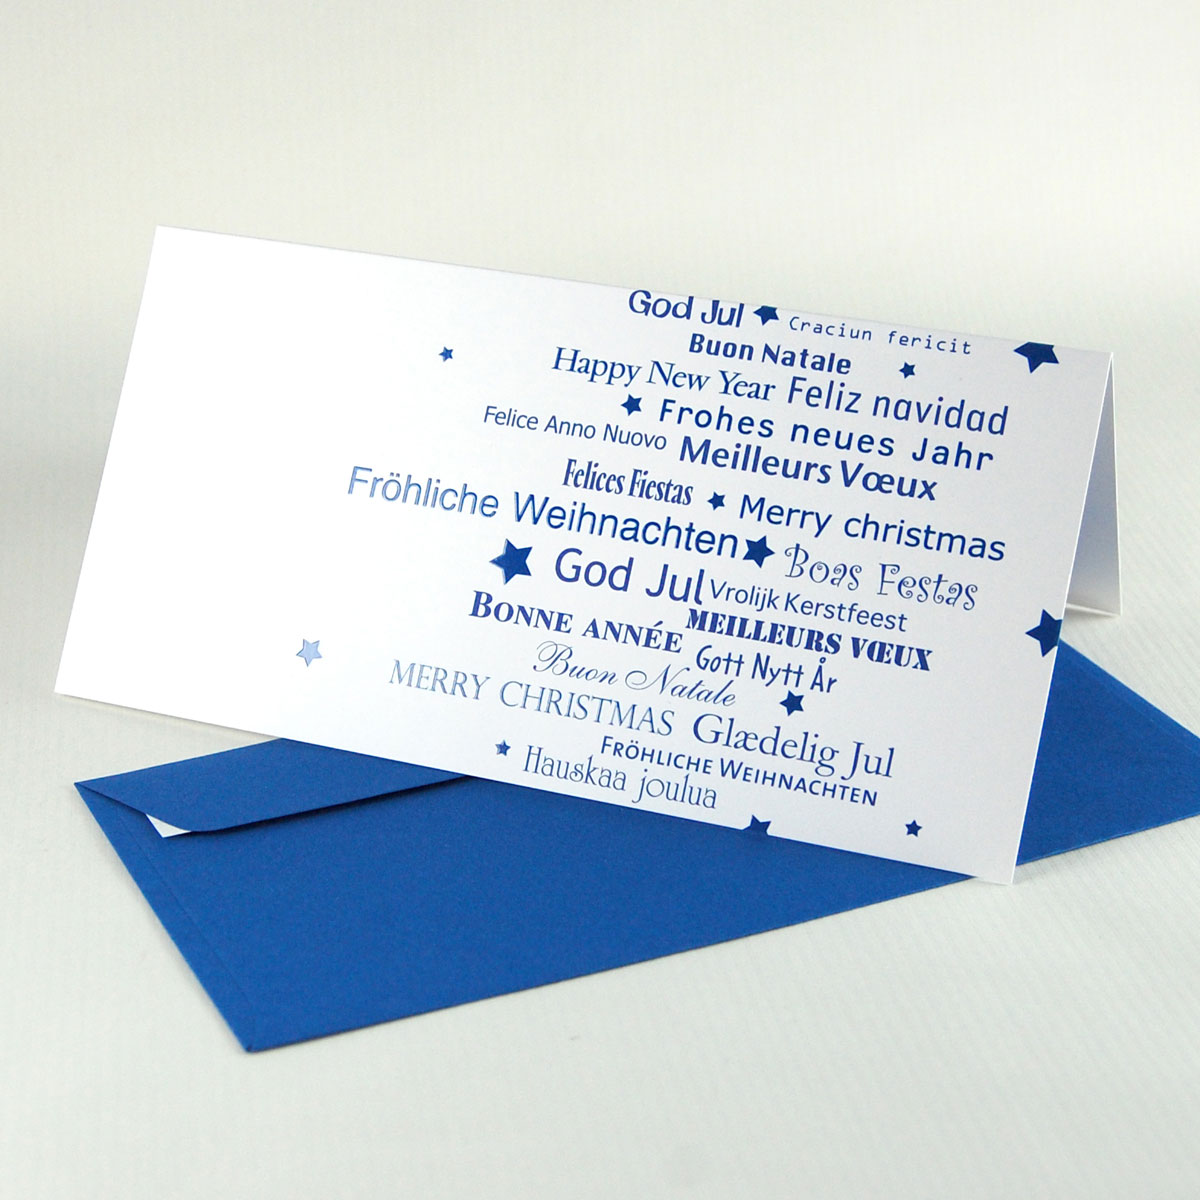 Fröhliche Weihnachten, Felices Fiestas, Craciun fericit - mehrsprachige Weihnachtskarten, blau gedruckt mit blauen Kuverts